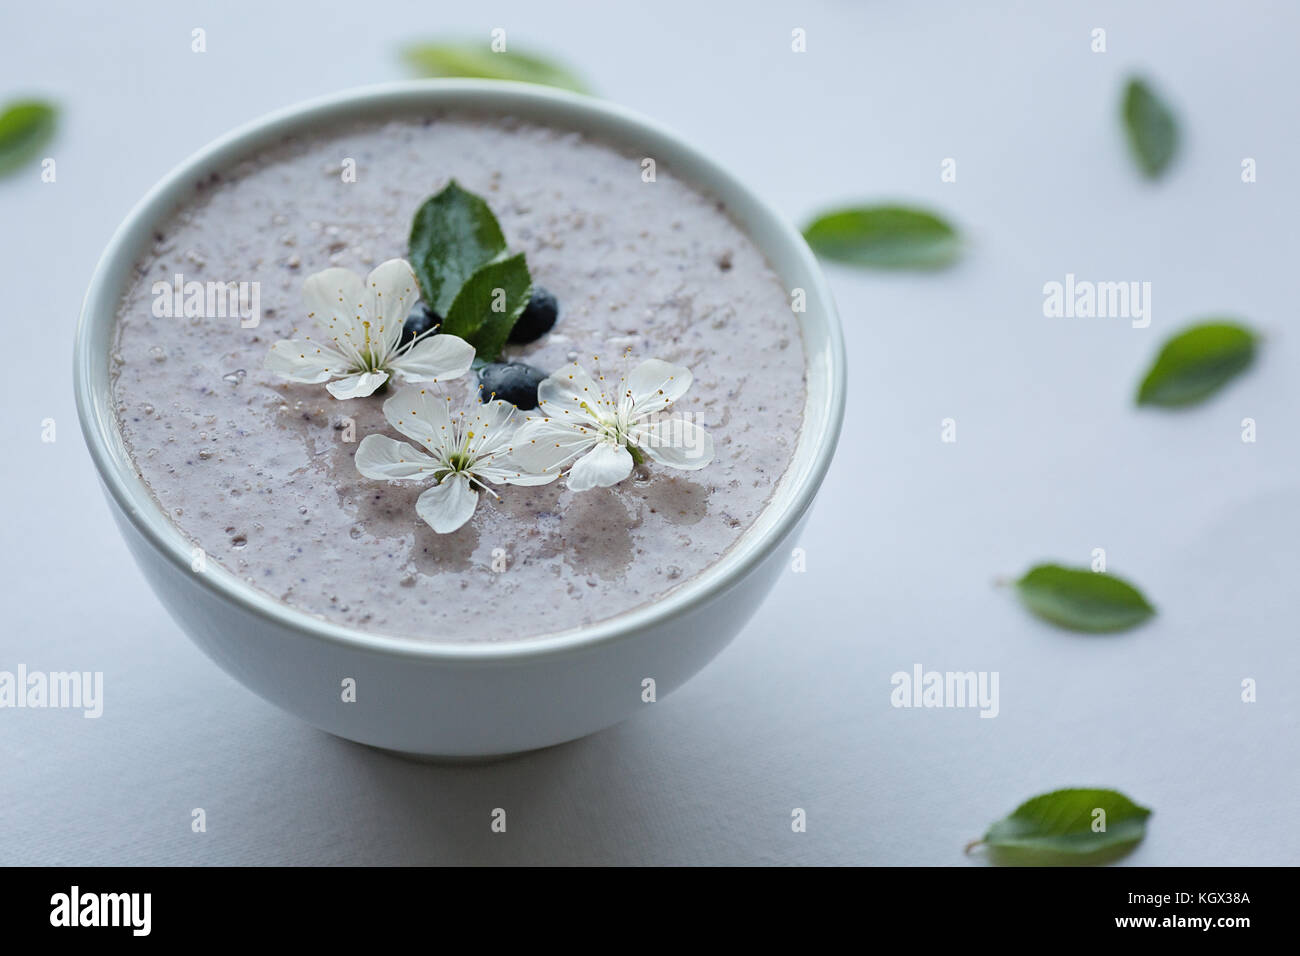 Farina di avena porridge realizzato di avena, purea di banana, latte di mandorla e frutti di bosco, tutti mescolati insieme, isolato su sfondo bianco Foto Stock